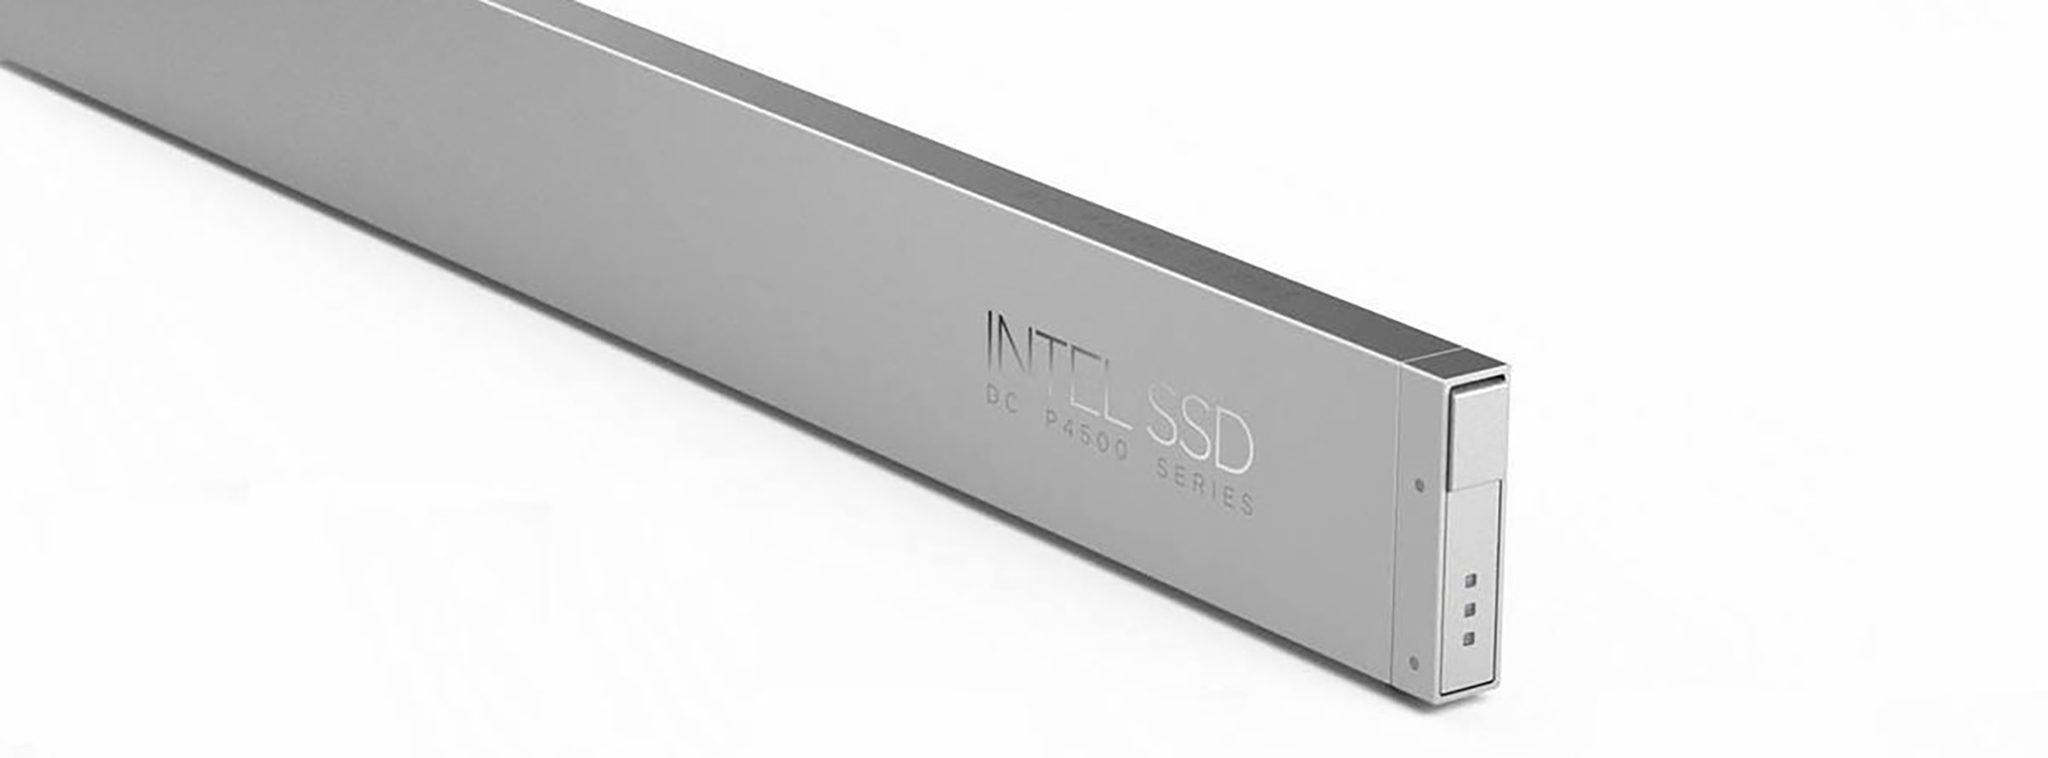 Intel giới thiệu form ổ SSD "thước kẻ" dành cho máy chủ